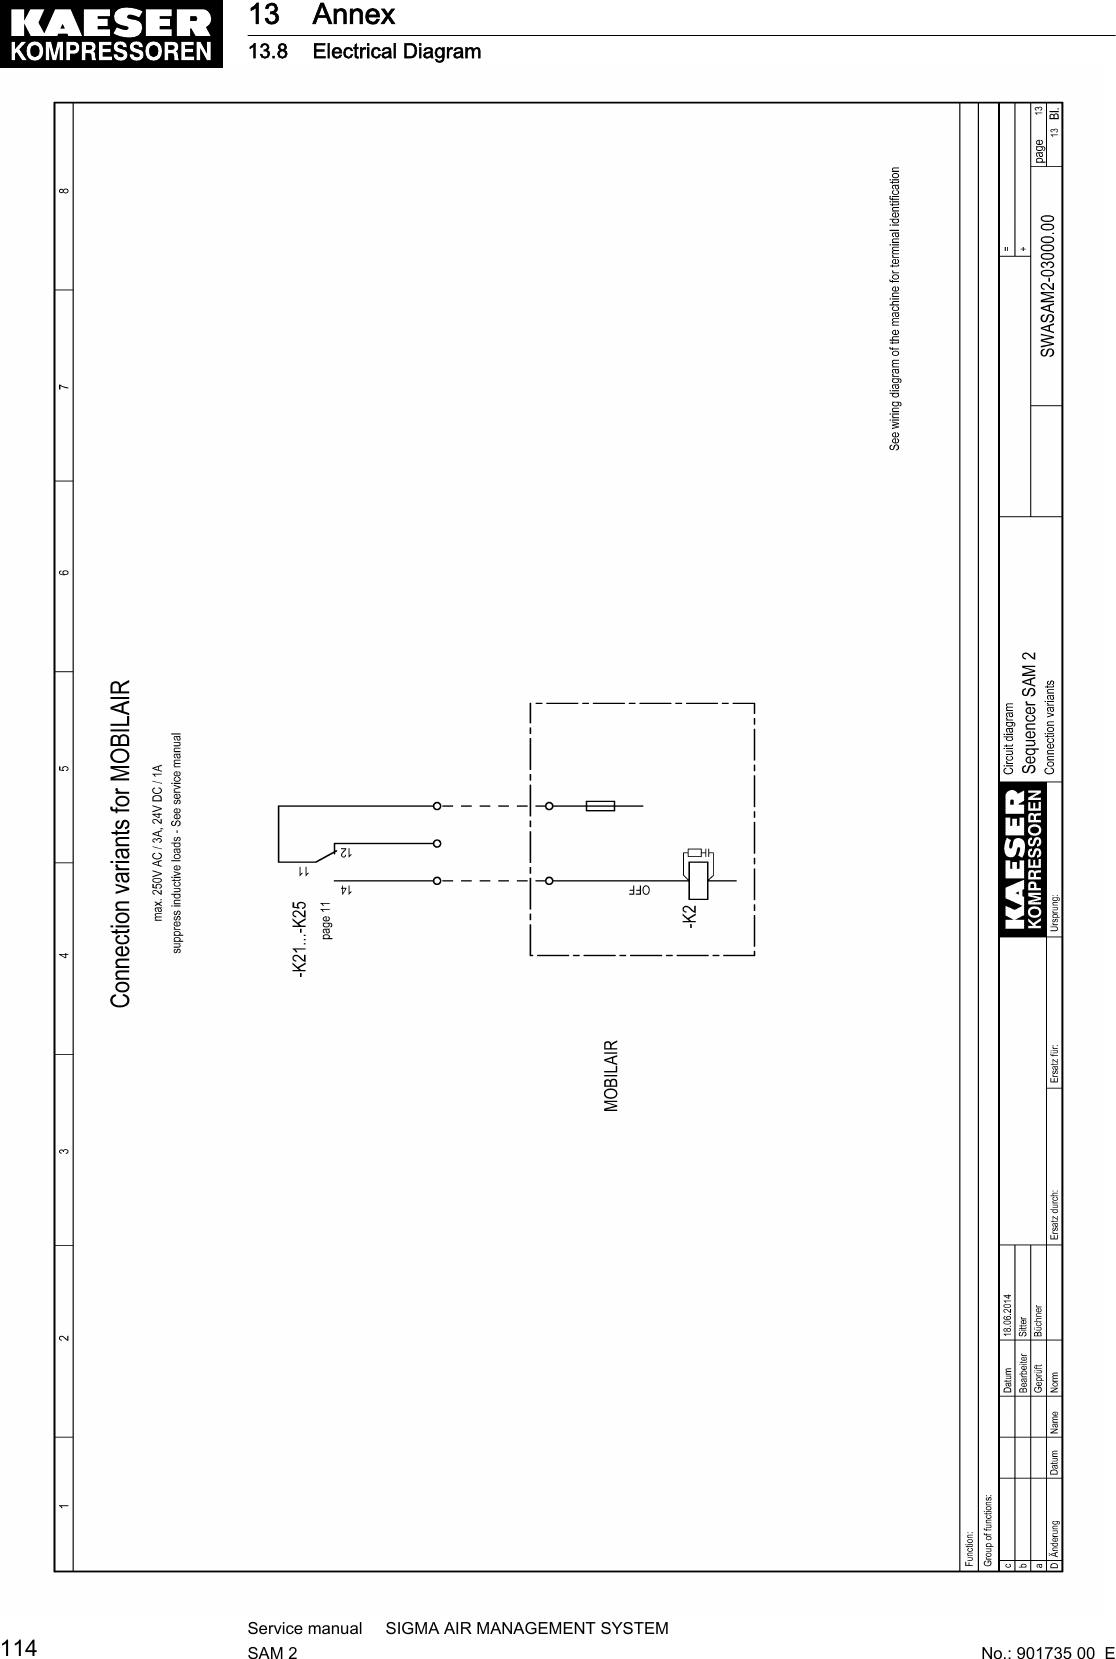 13 Annex13.8 Electrical Diagram114Service manual     SIGMA AIR MANAGEMENT SYSTEMSAM 2  No.: 901735 00  E